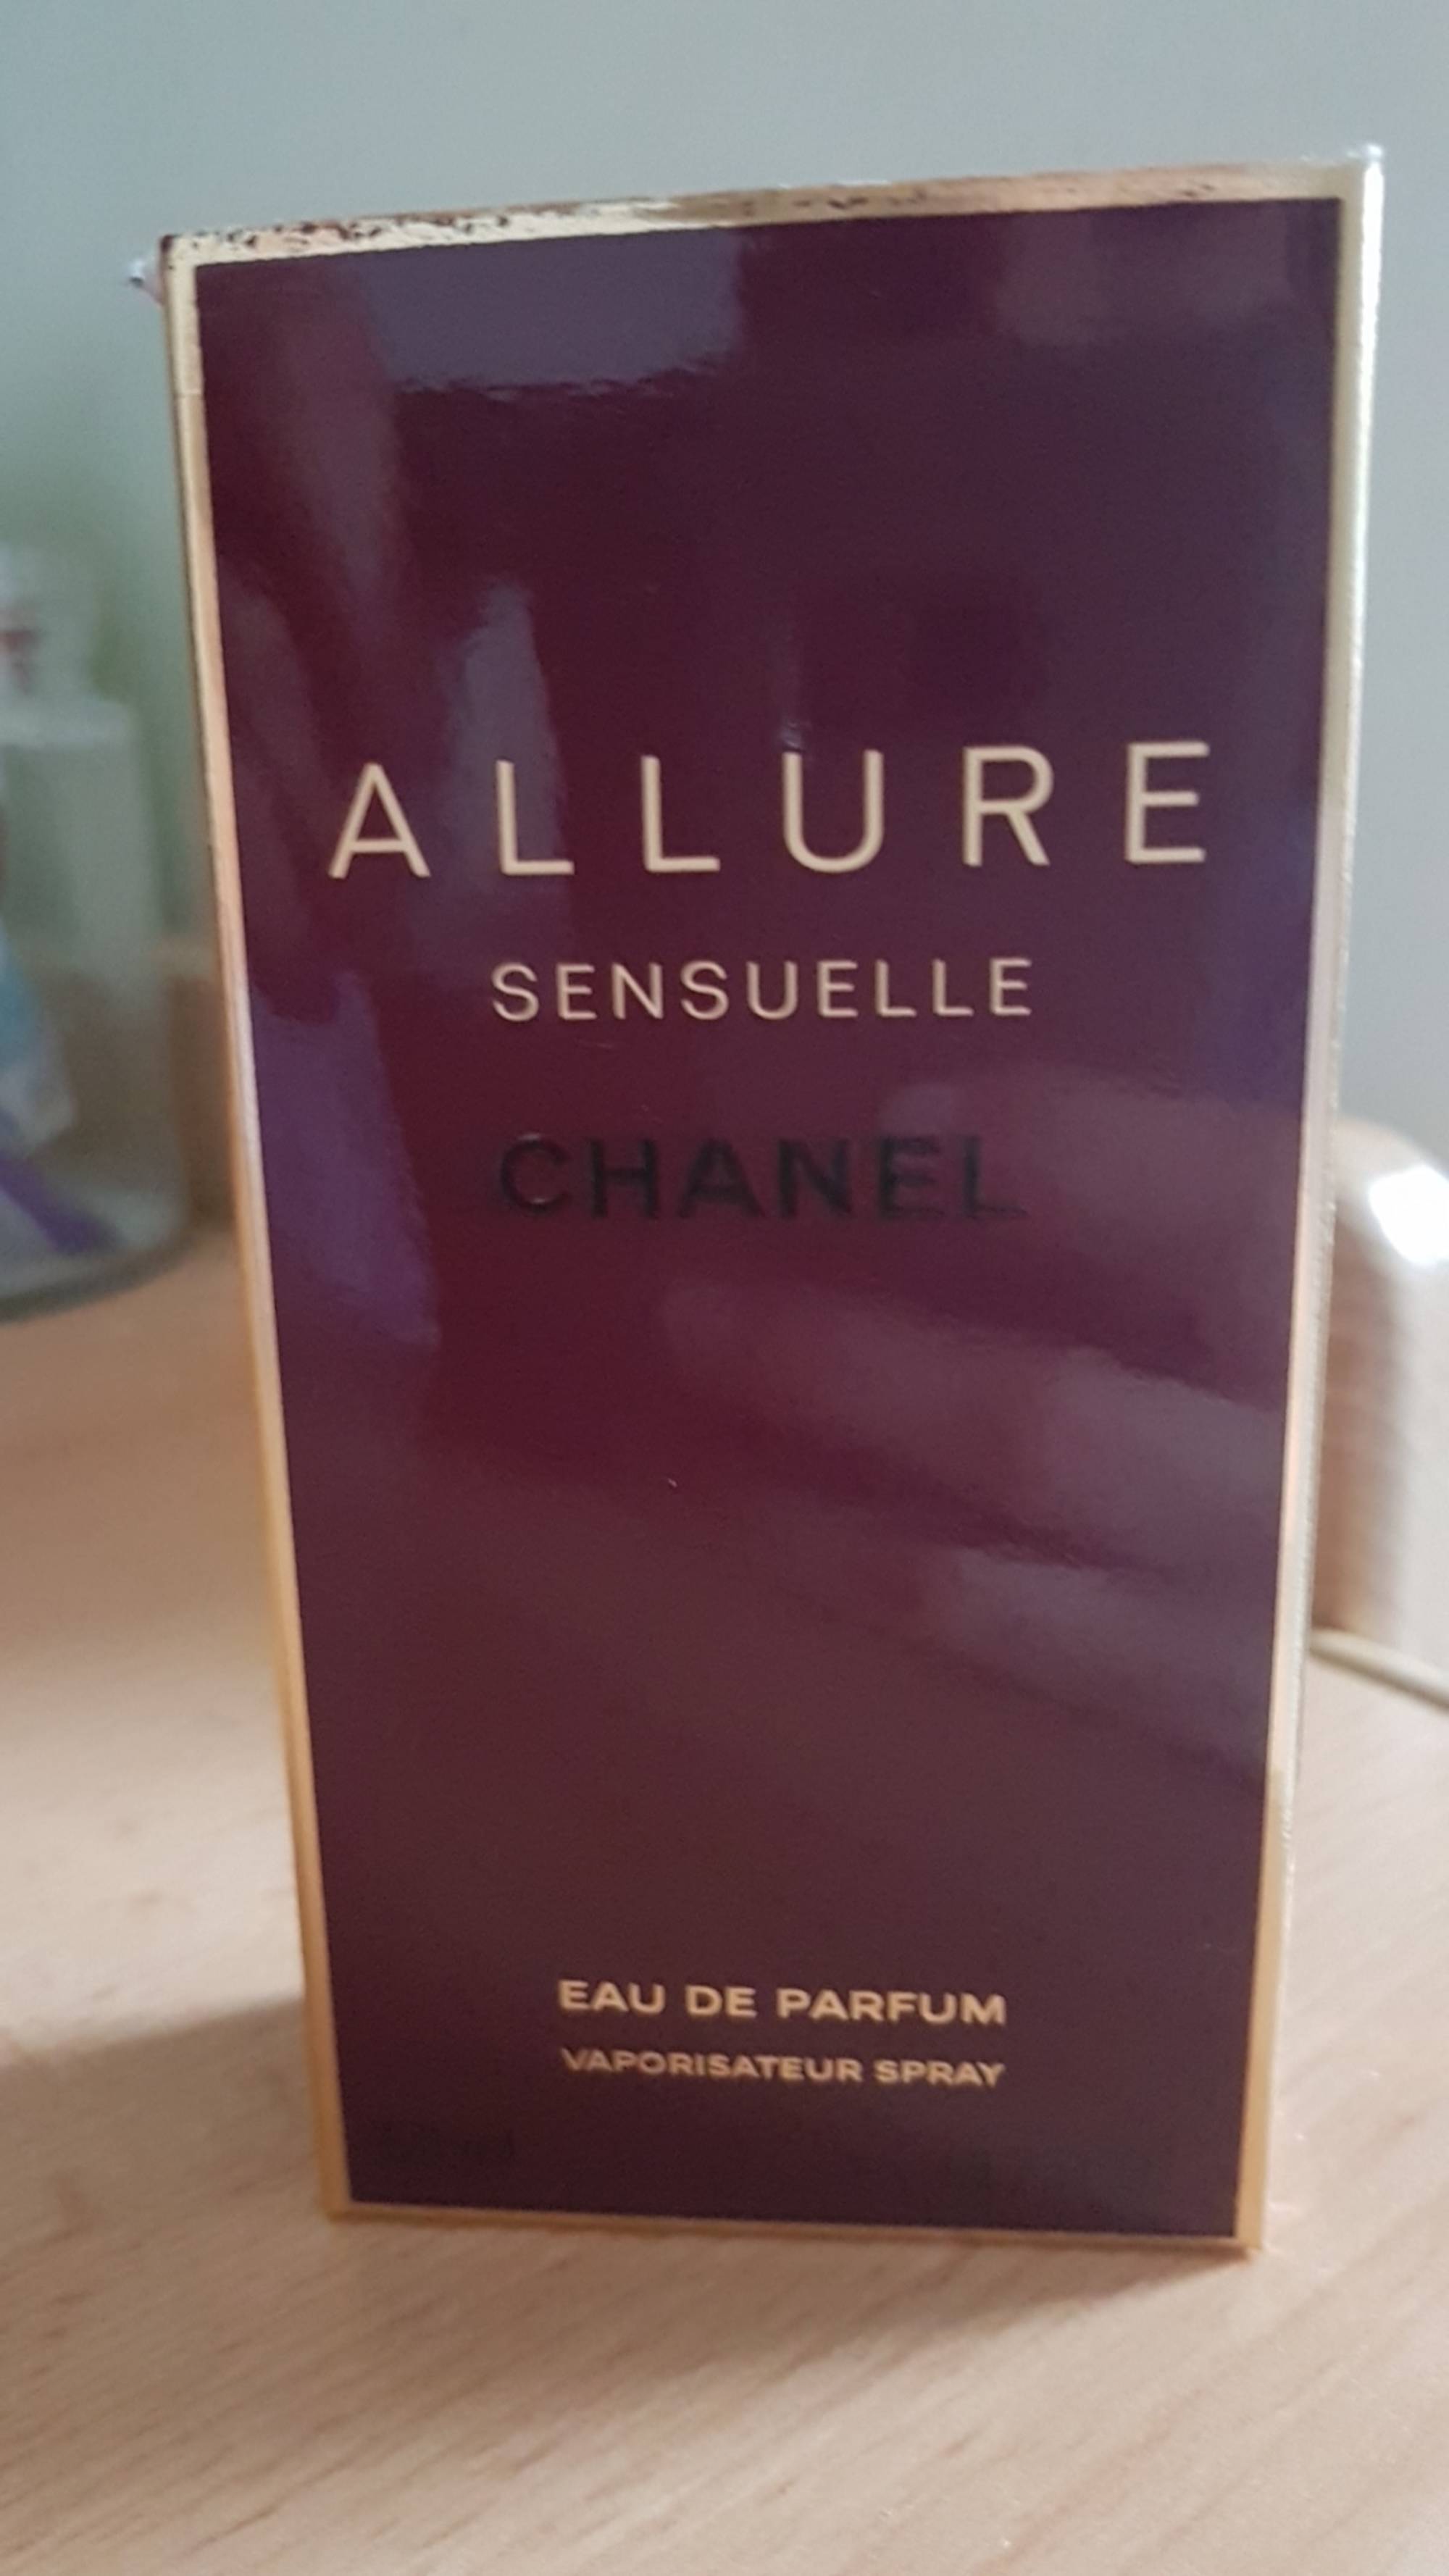 CHANEL - Allure Sensuelle - Eau de parfum